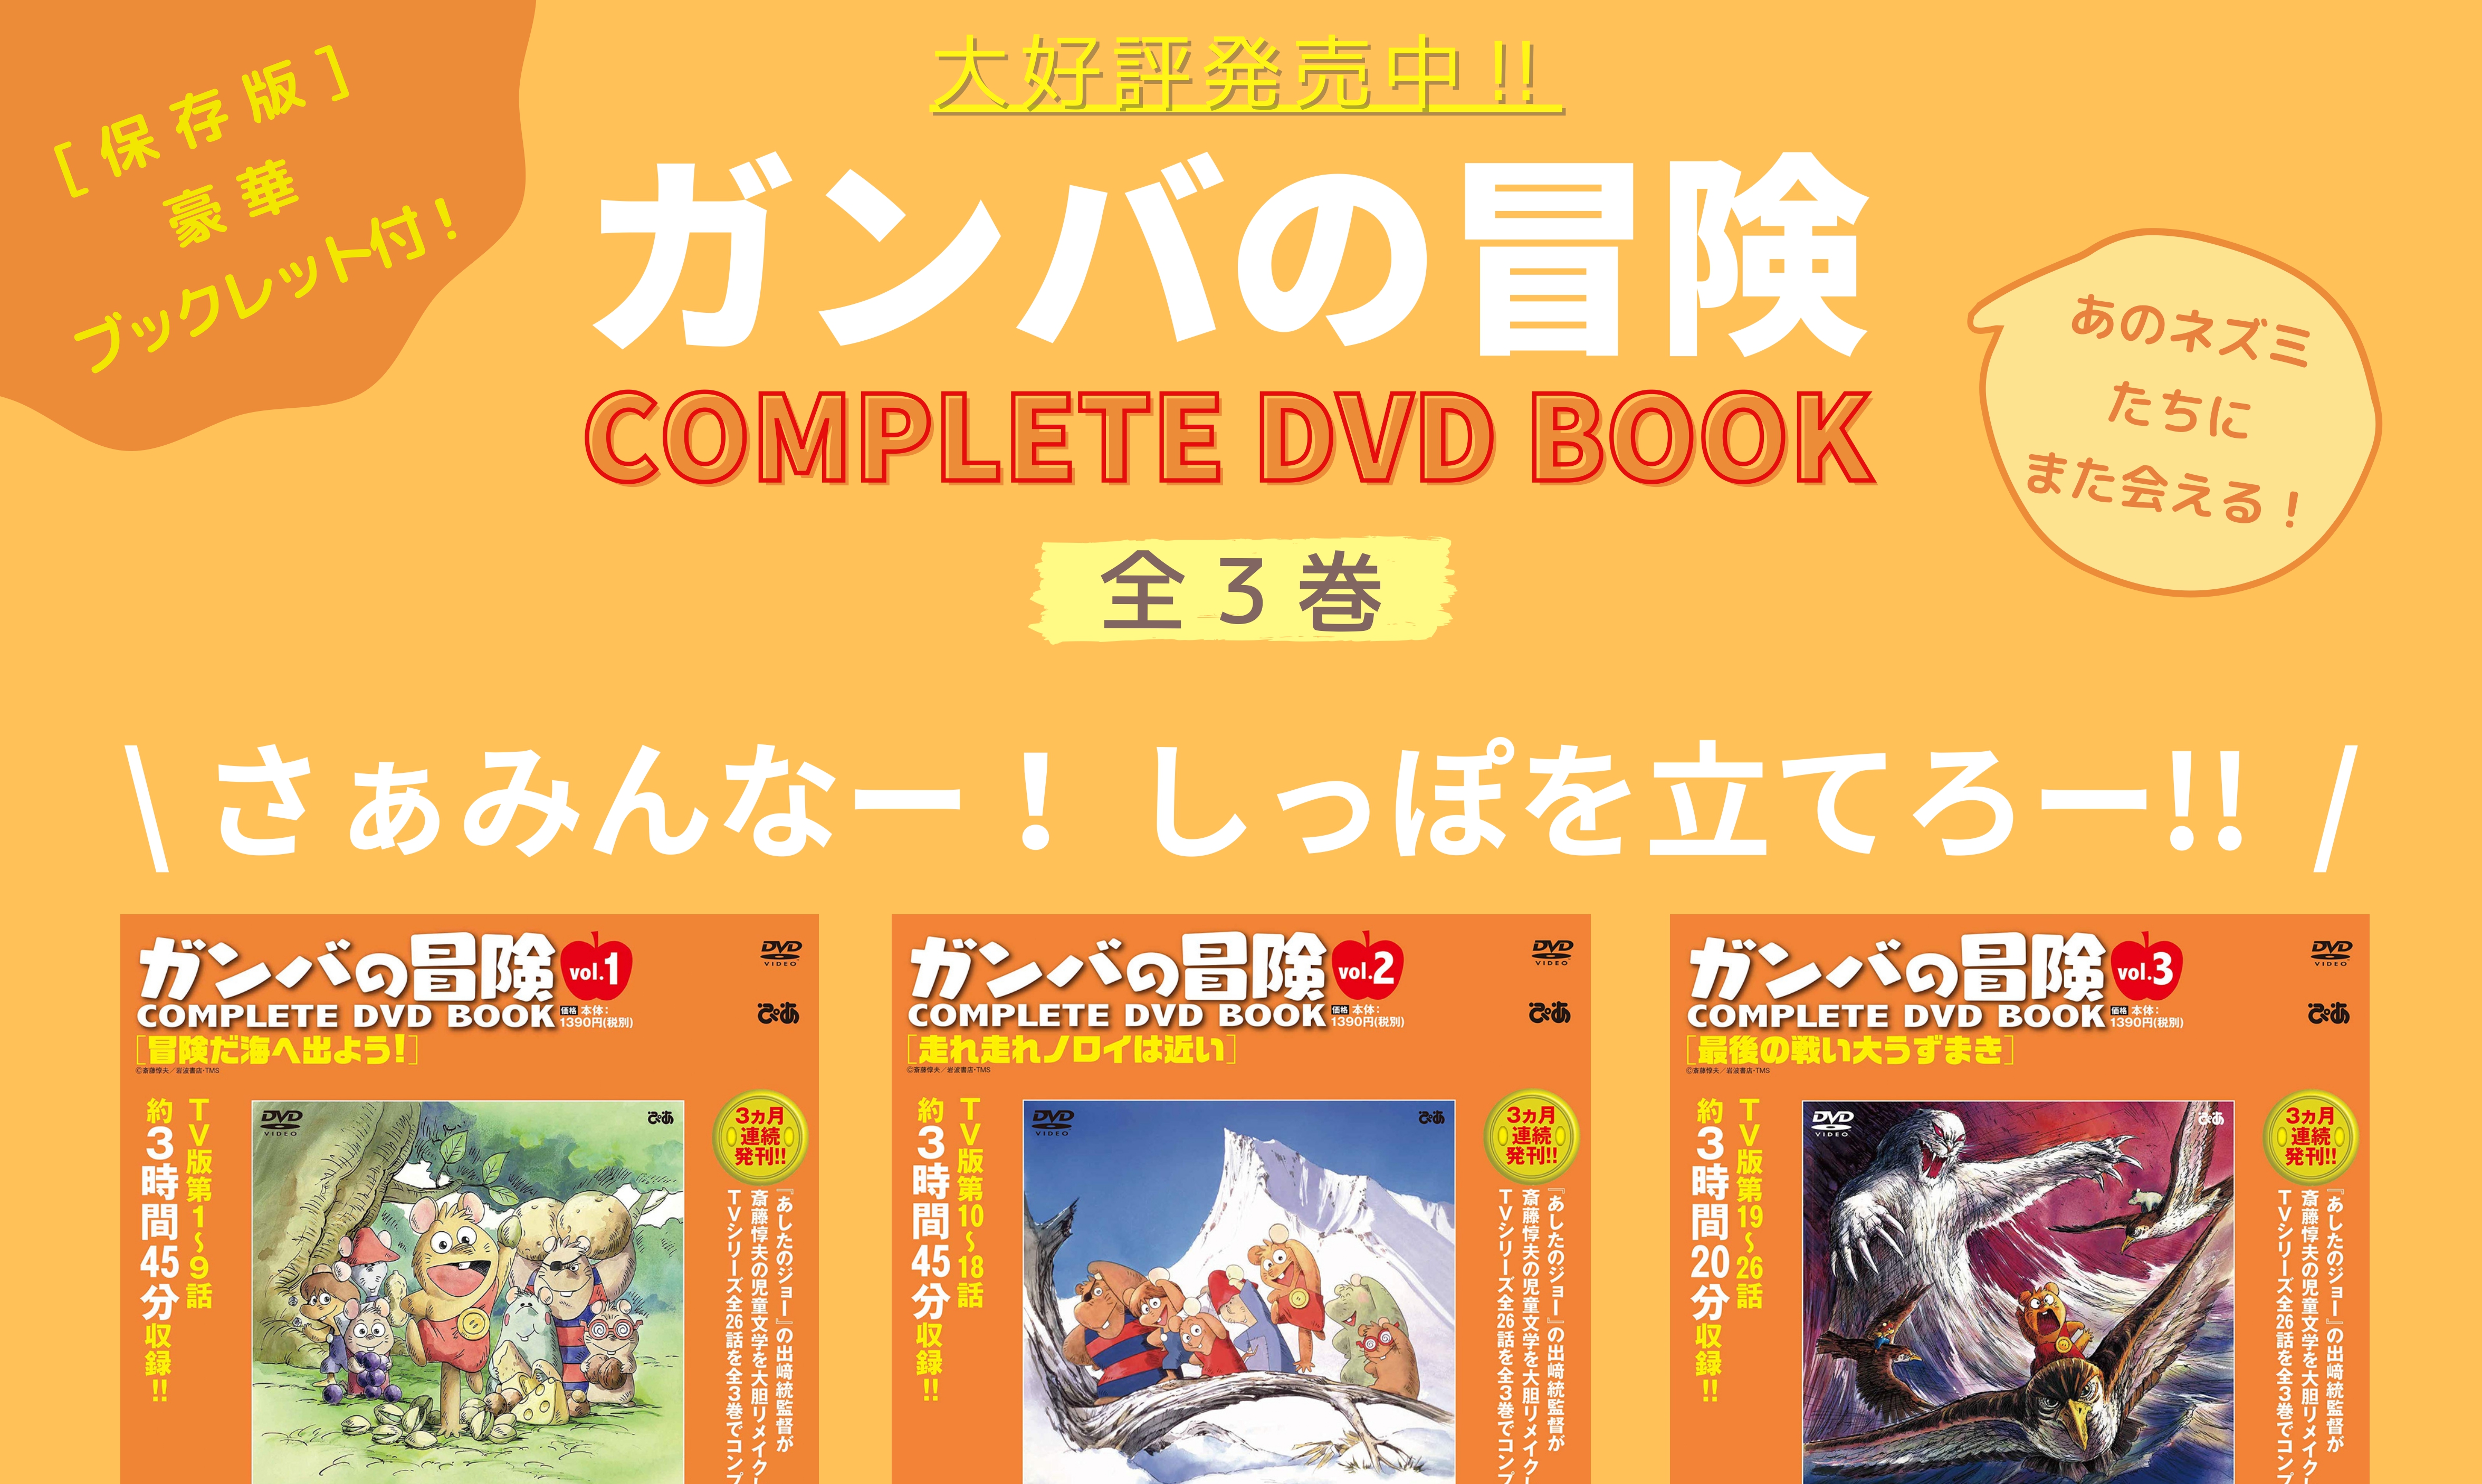 ガンバの冒険 Complete Dvd Book Vol 1 ぴあ株式会社